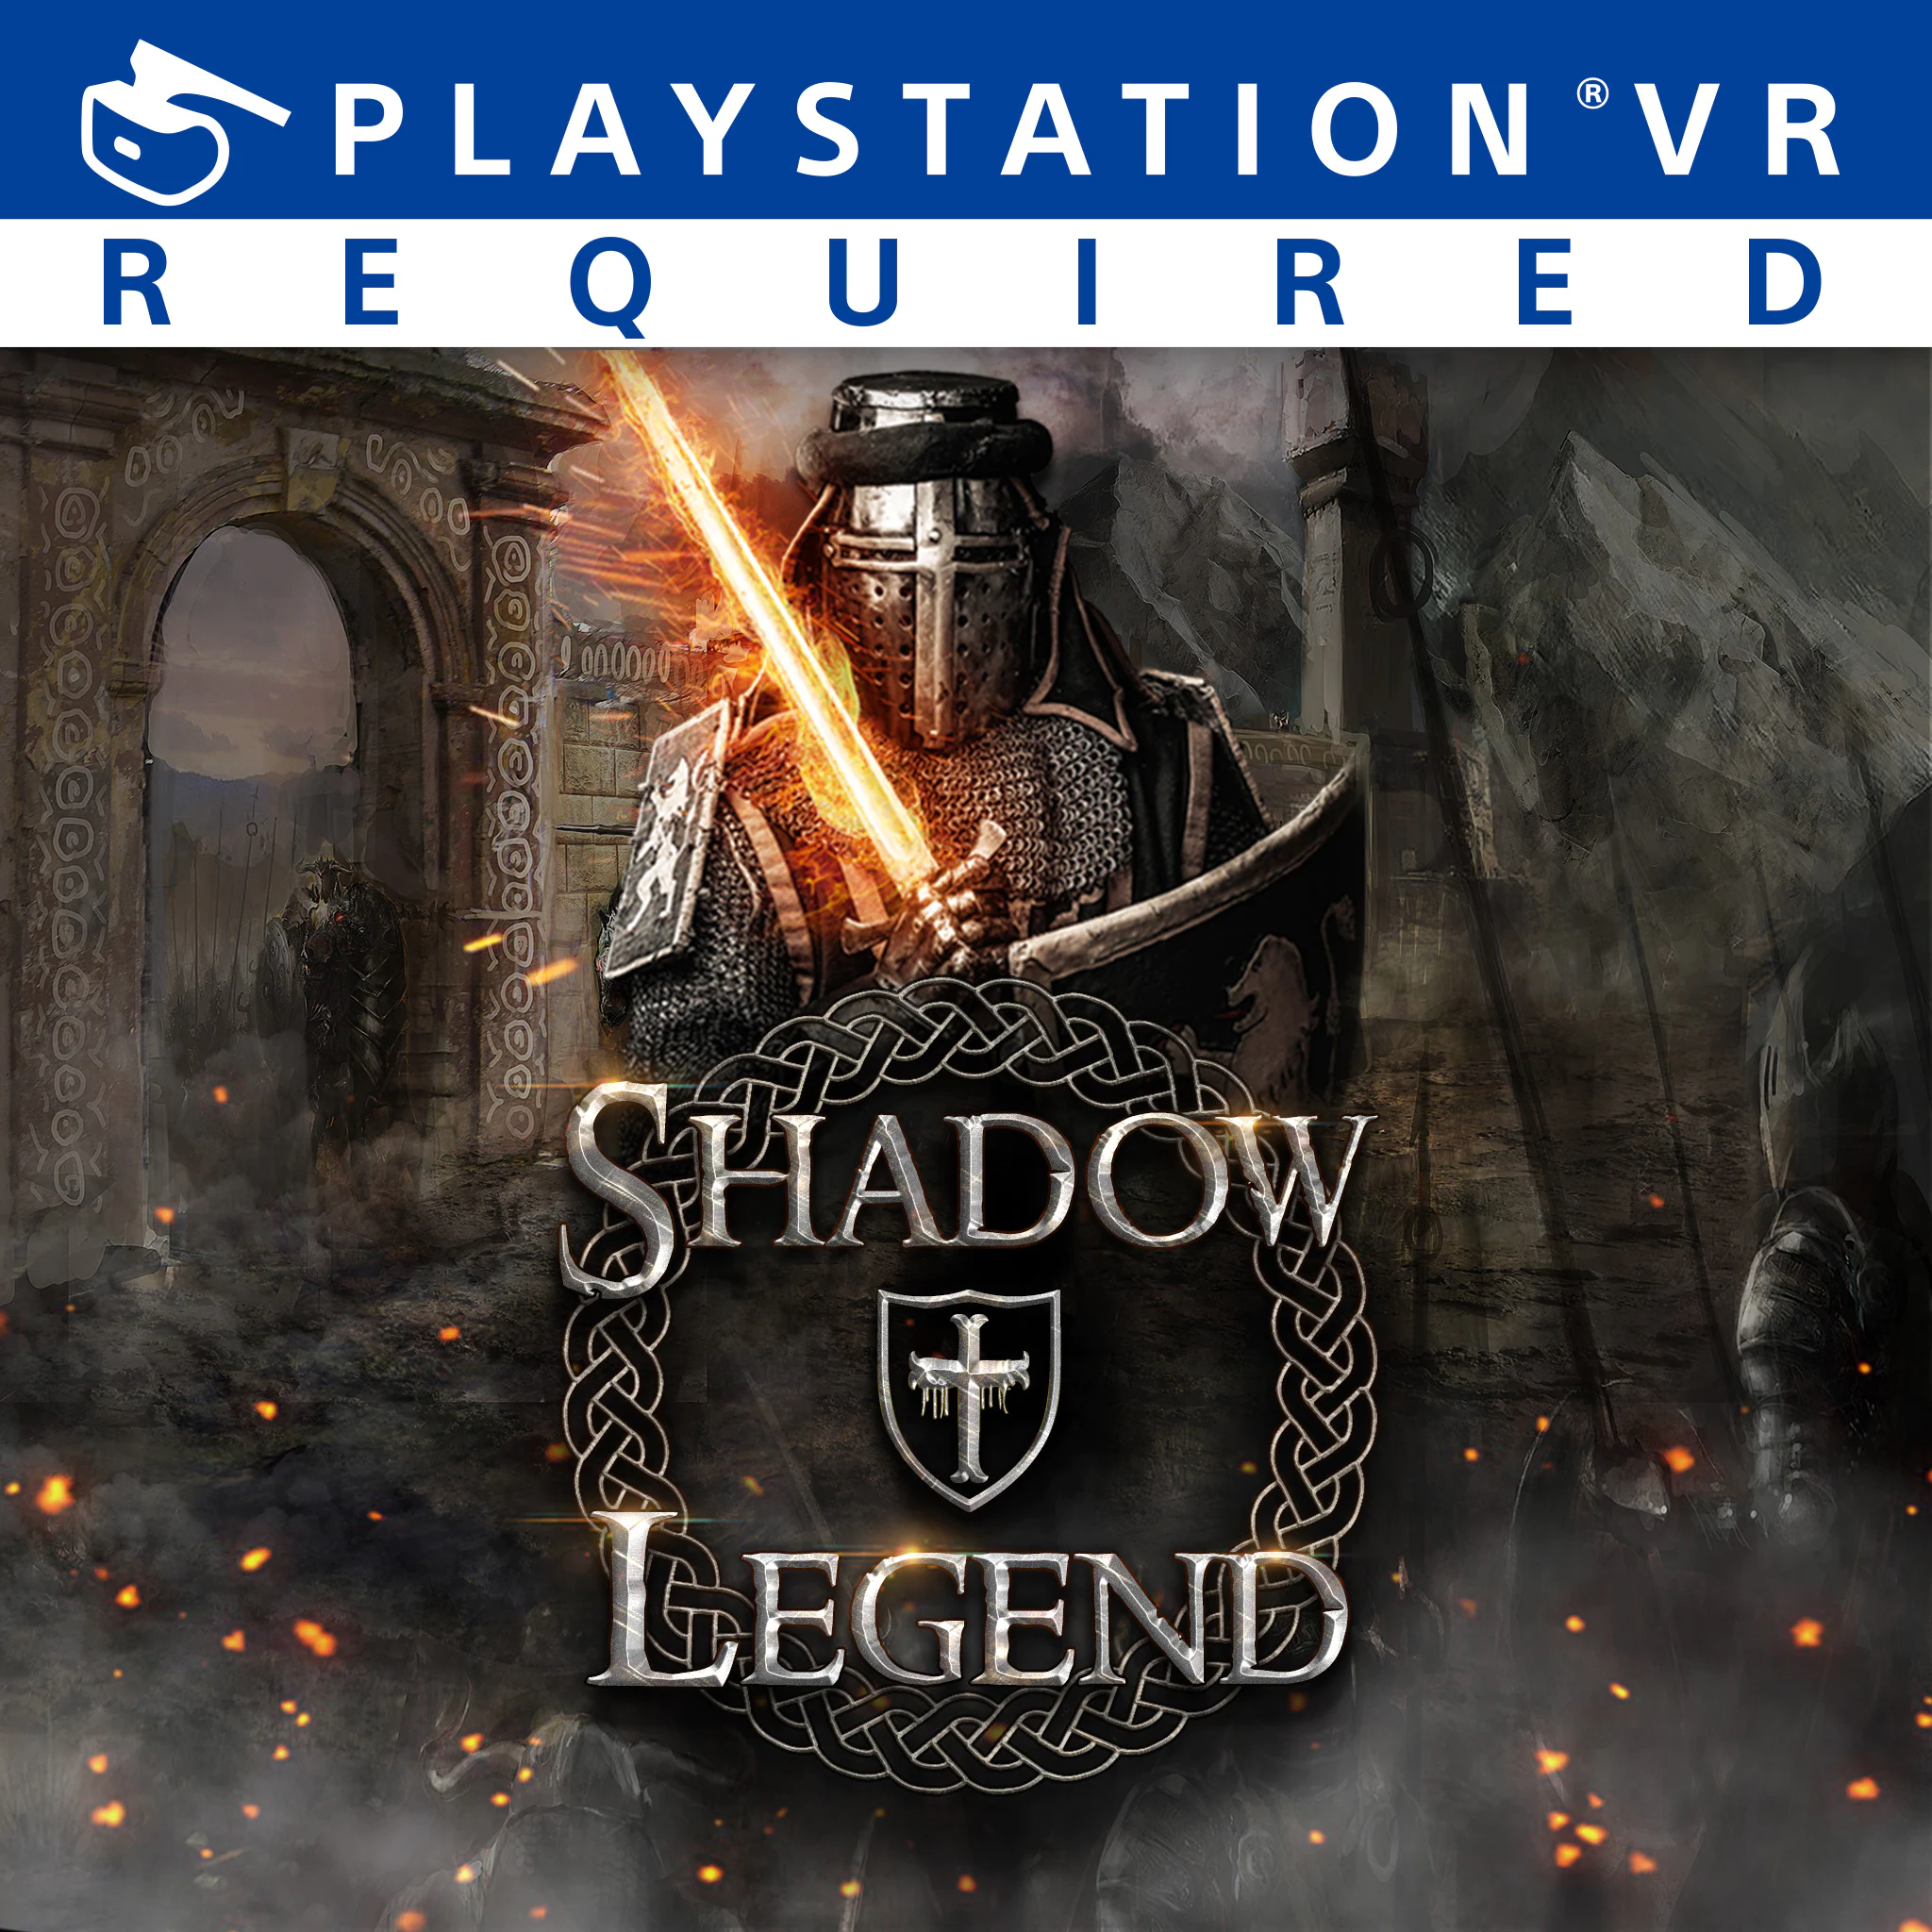 Shadow vr. Shadow Legend VR. Drum Legend VR. The Quest for Excalibur: Puy du fou [ps4. Ключ под диском игра GFWL.